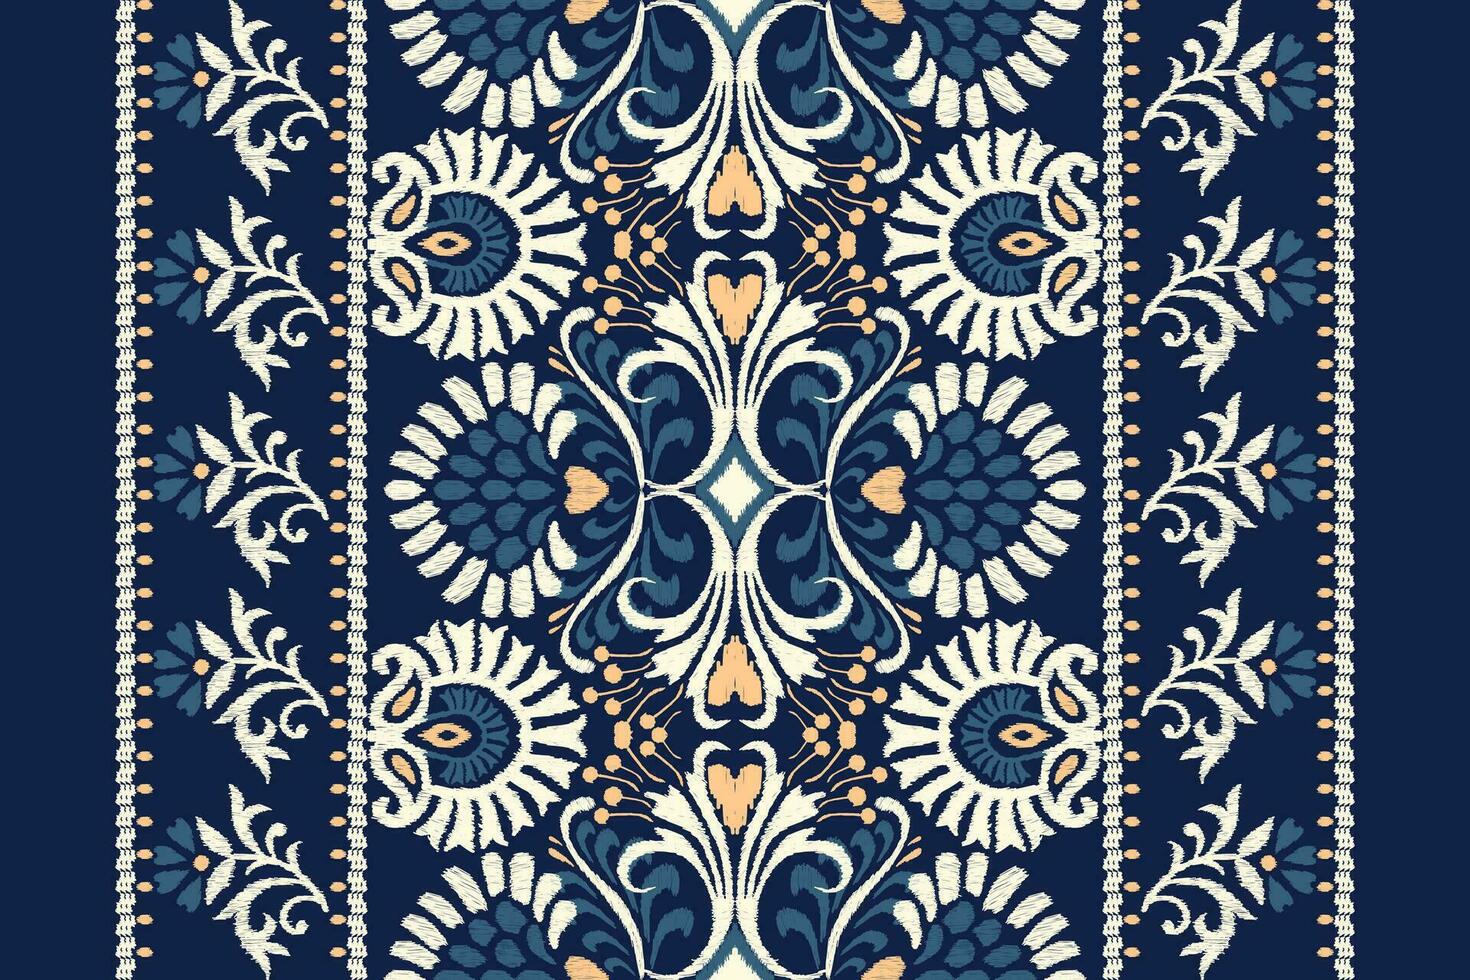 Ikat Blumen- Paisley Stickerei auf Marine Blau hintergrund.ikat ethnisch orientalisch Muster traditionell.aztekisch Stil abstrakt Vektor illustration.design zum textur, stoff, kleidung, verpackung, dekoration, schal.